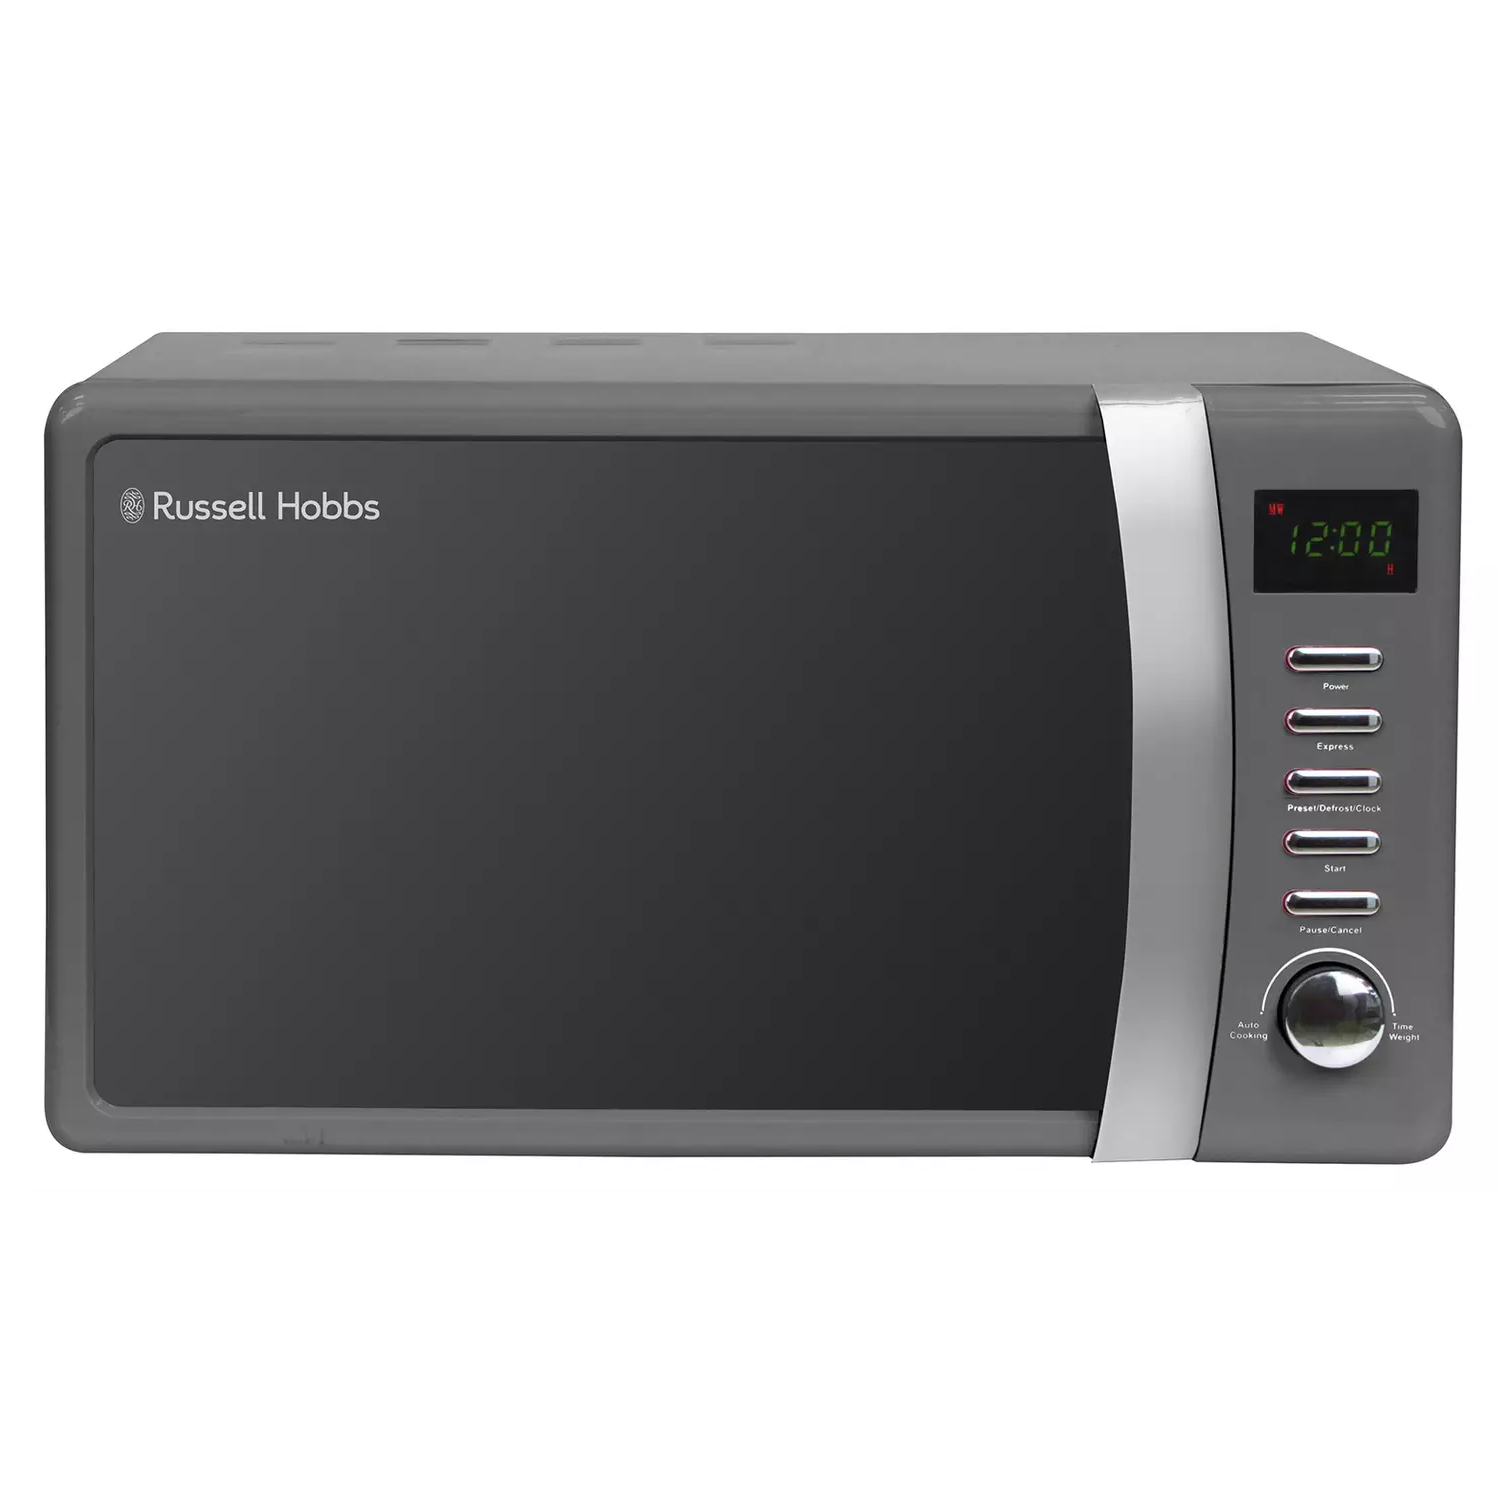 Russell Hobbs Worcester 700W Standard Microwave - Grey